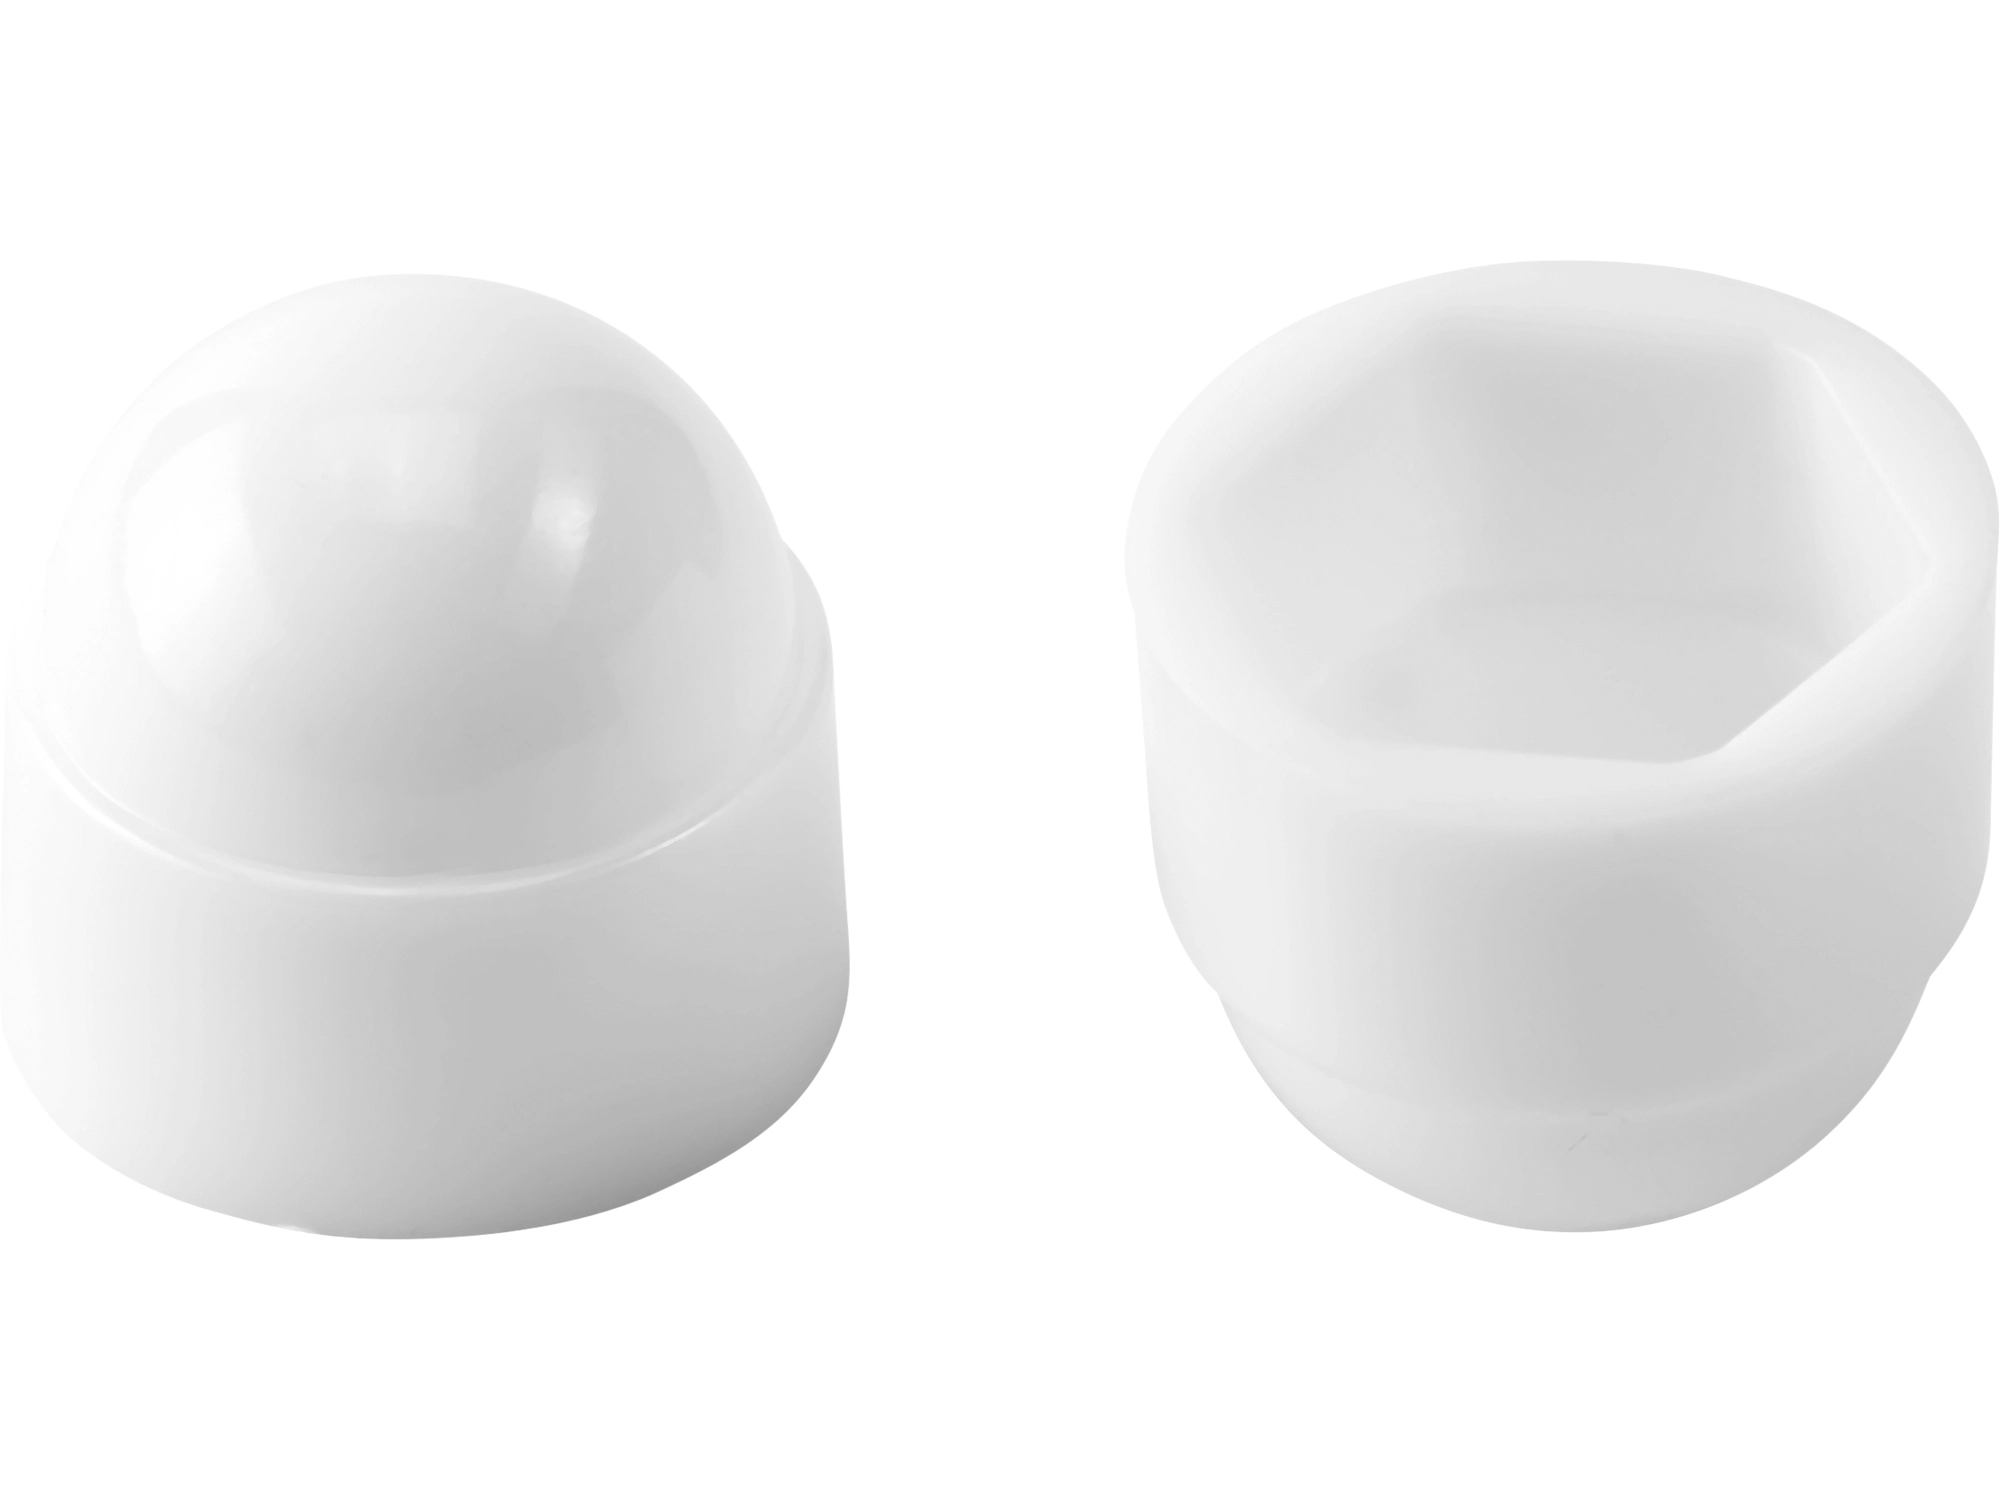 Abdeckkappen für Universalschrauben mit Kopfbohrung, weiß, 25 Stück